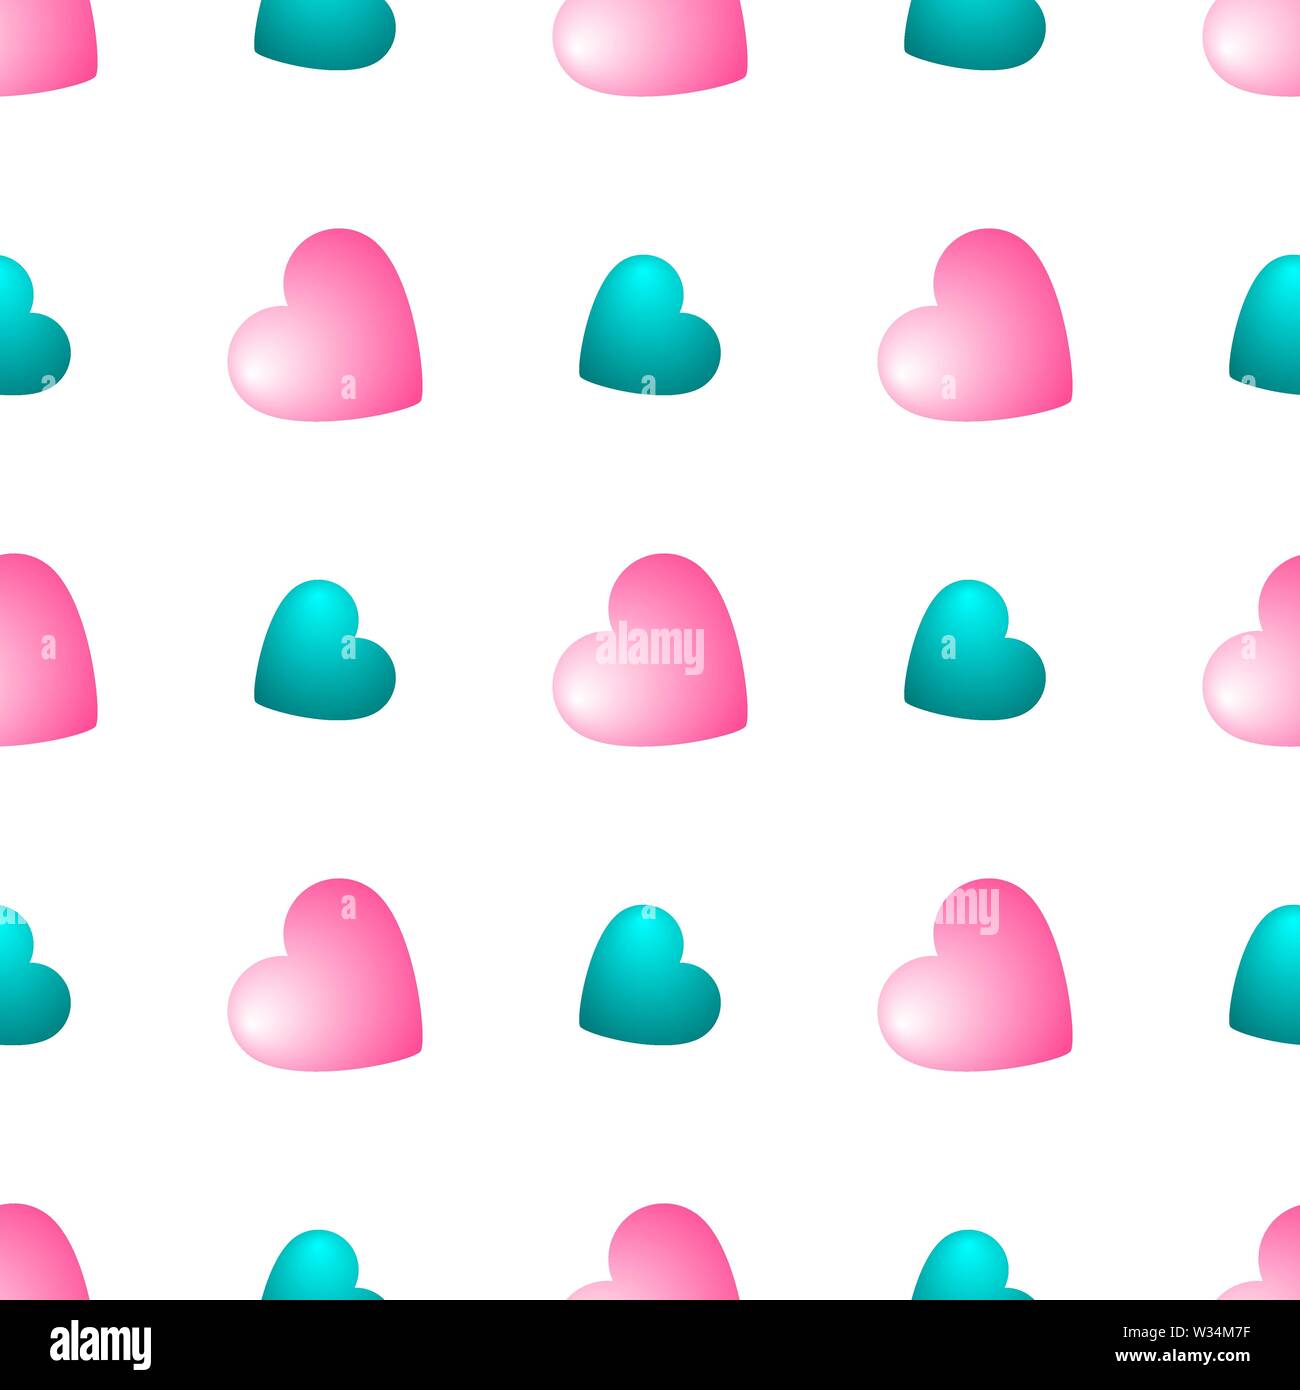 Nahtlose Muster mit pinkfarbenen und blauen Herzen auf weißem Hintergrund. Vector Illustration für Design, Web, Geschenkpapier, Textilien, Tapeten. Stock Vektor